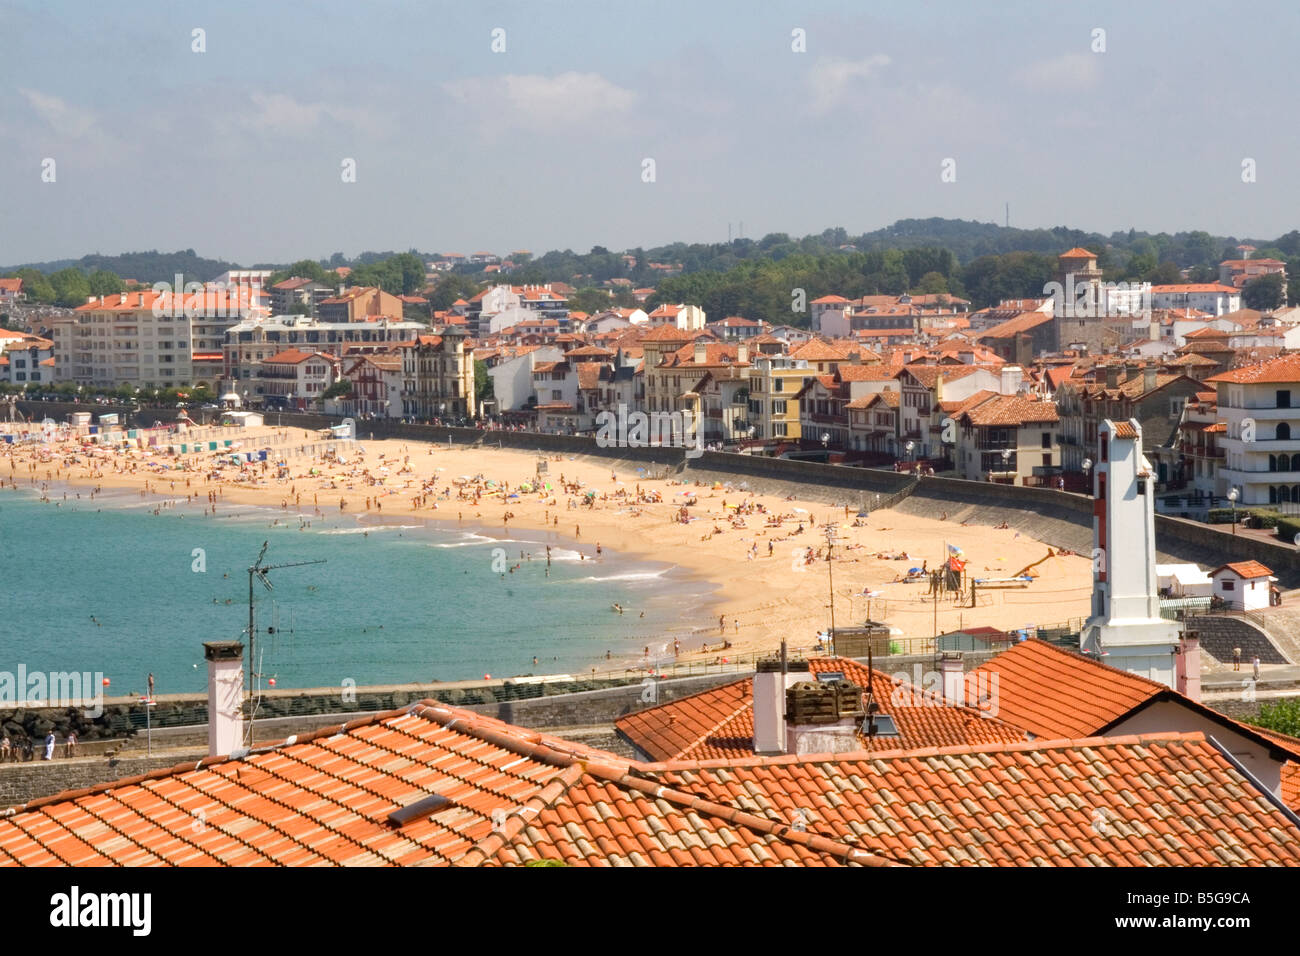 Hafen und Stadt in Ciboure Pyrenäen Atlantiques französischen baskischen Land Südwest-Frankreich Stockfoto